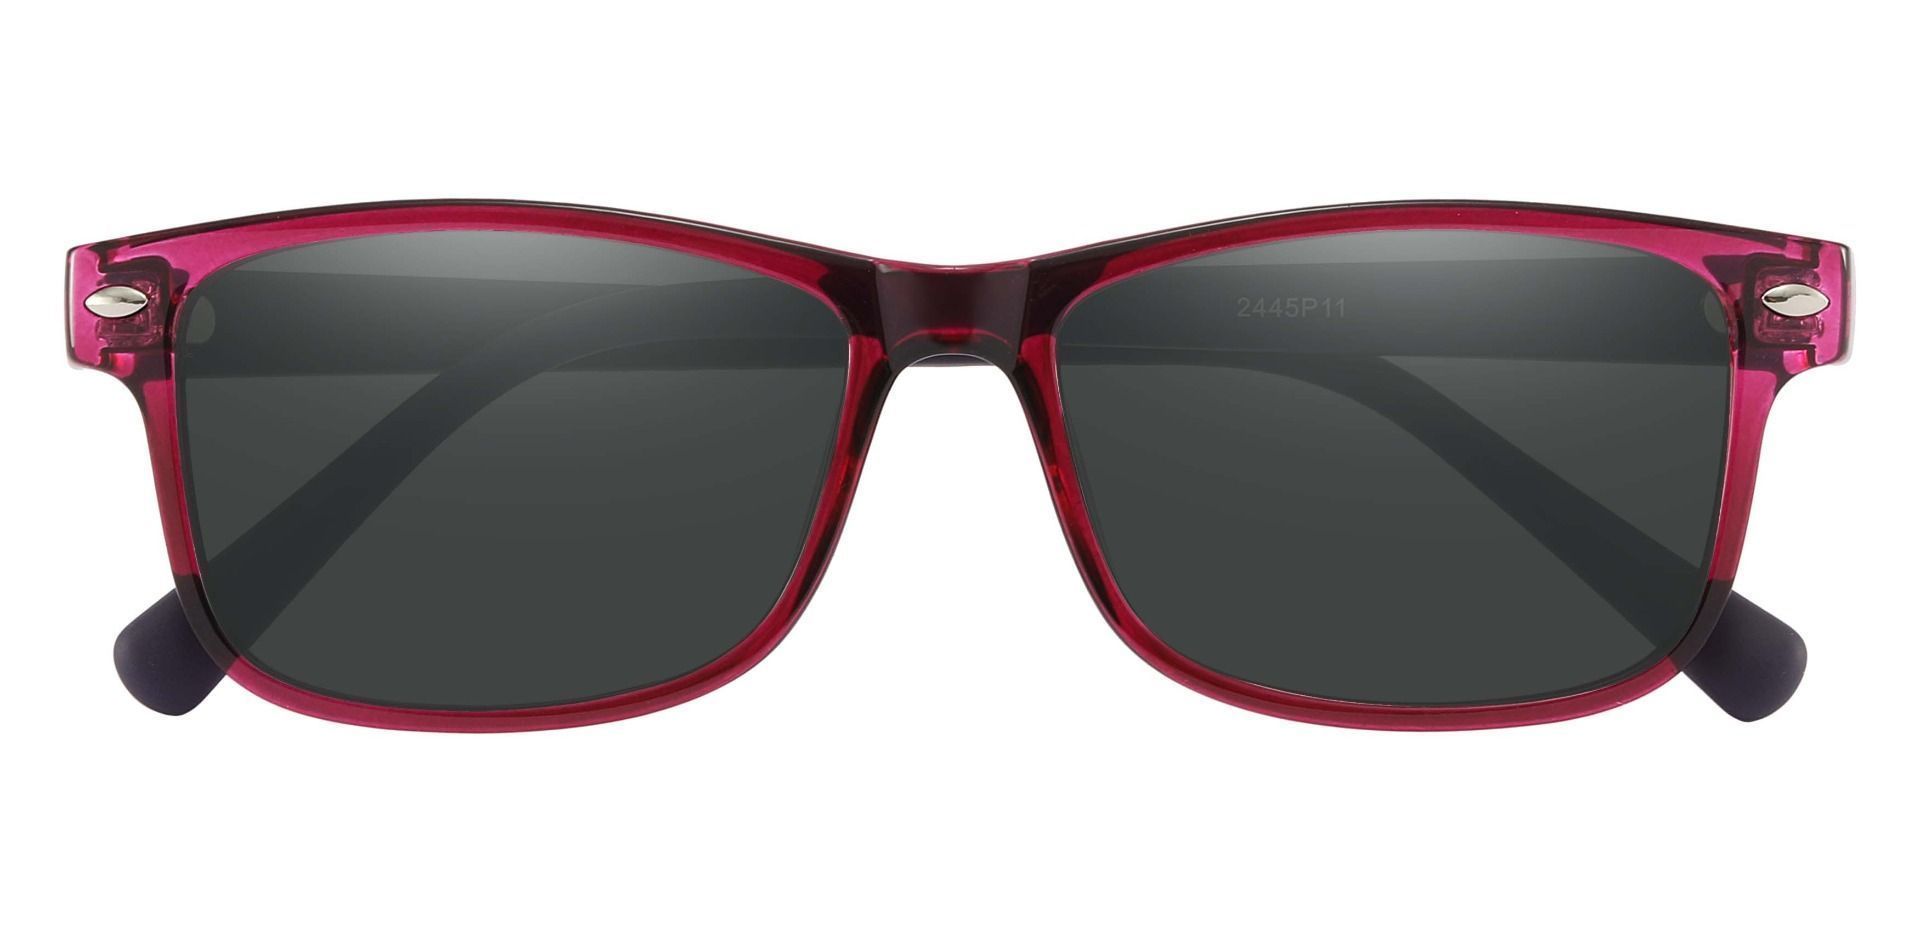 Minerva Rectangle Non-Rx Sunglasses - Purple Frame With Gray Lenses